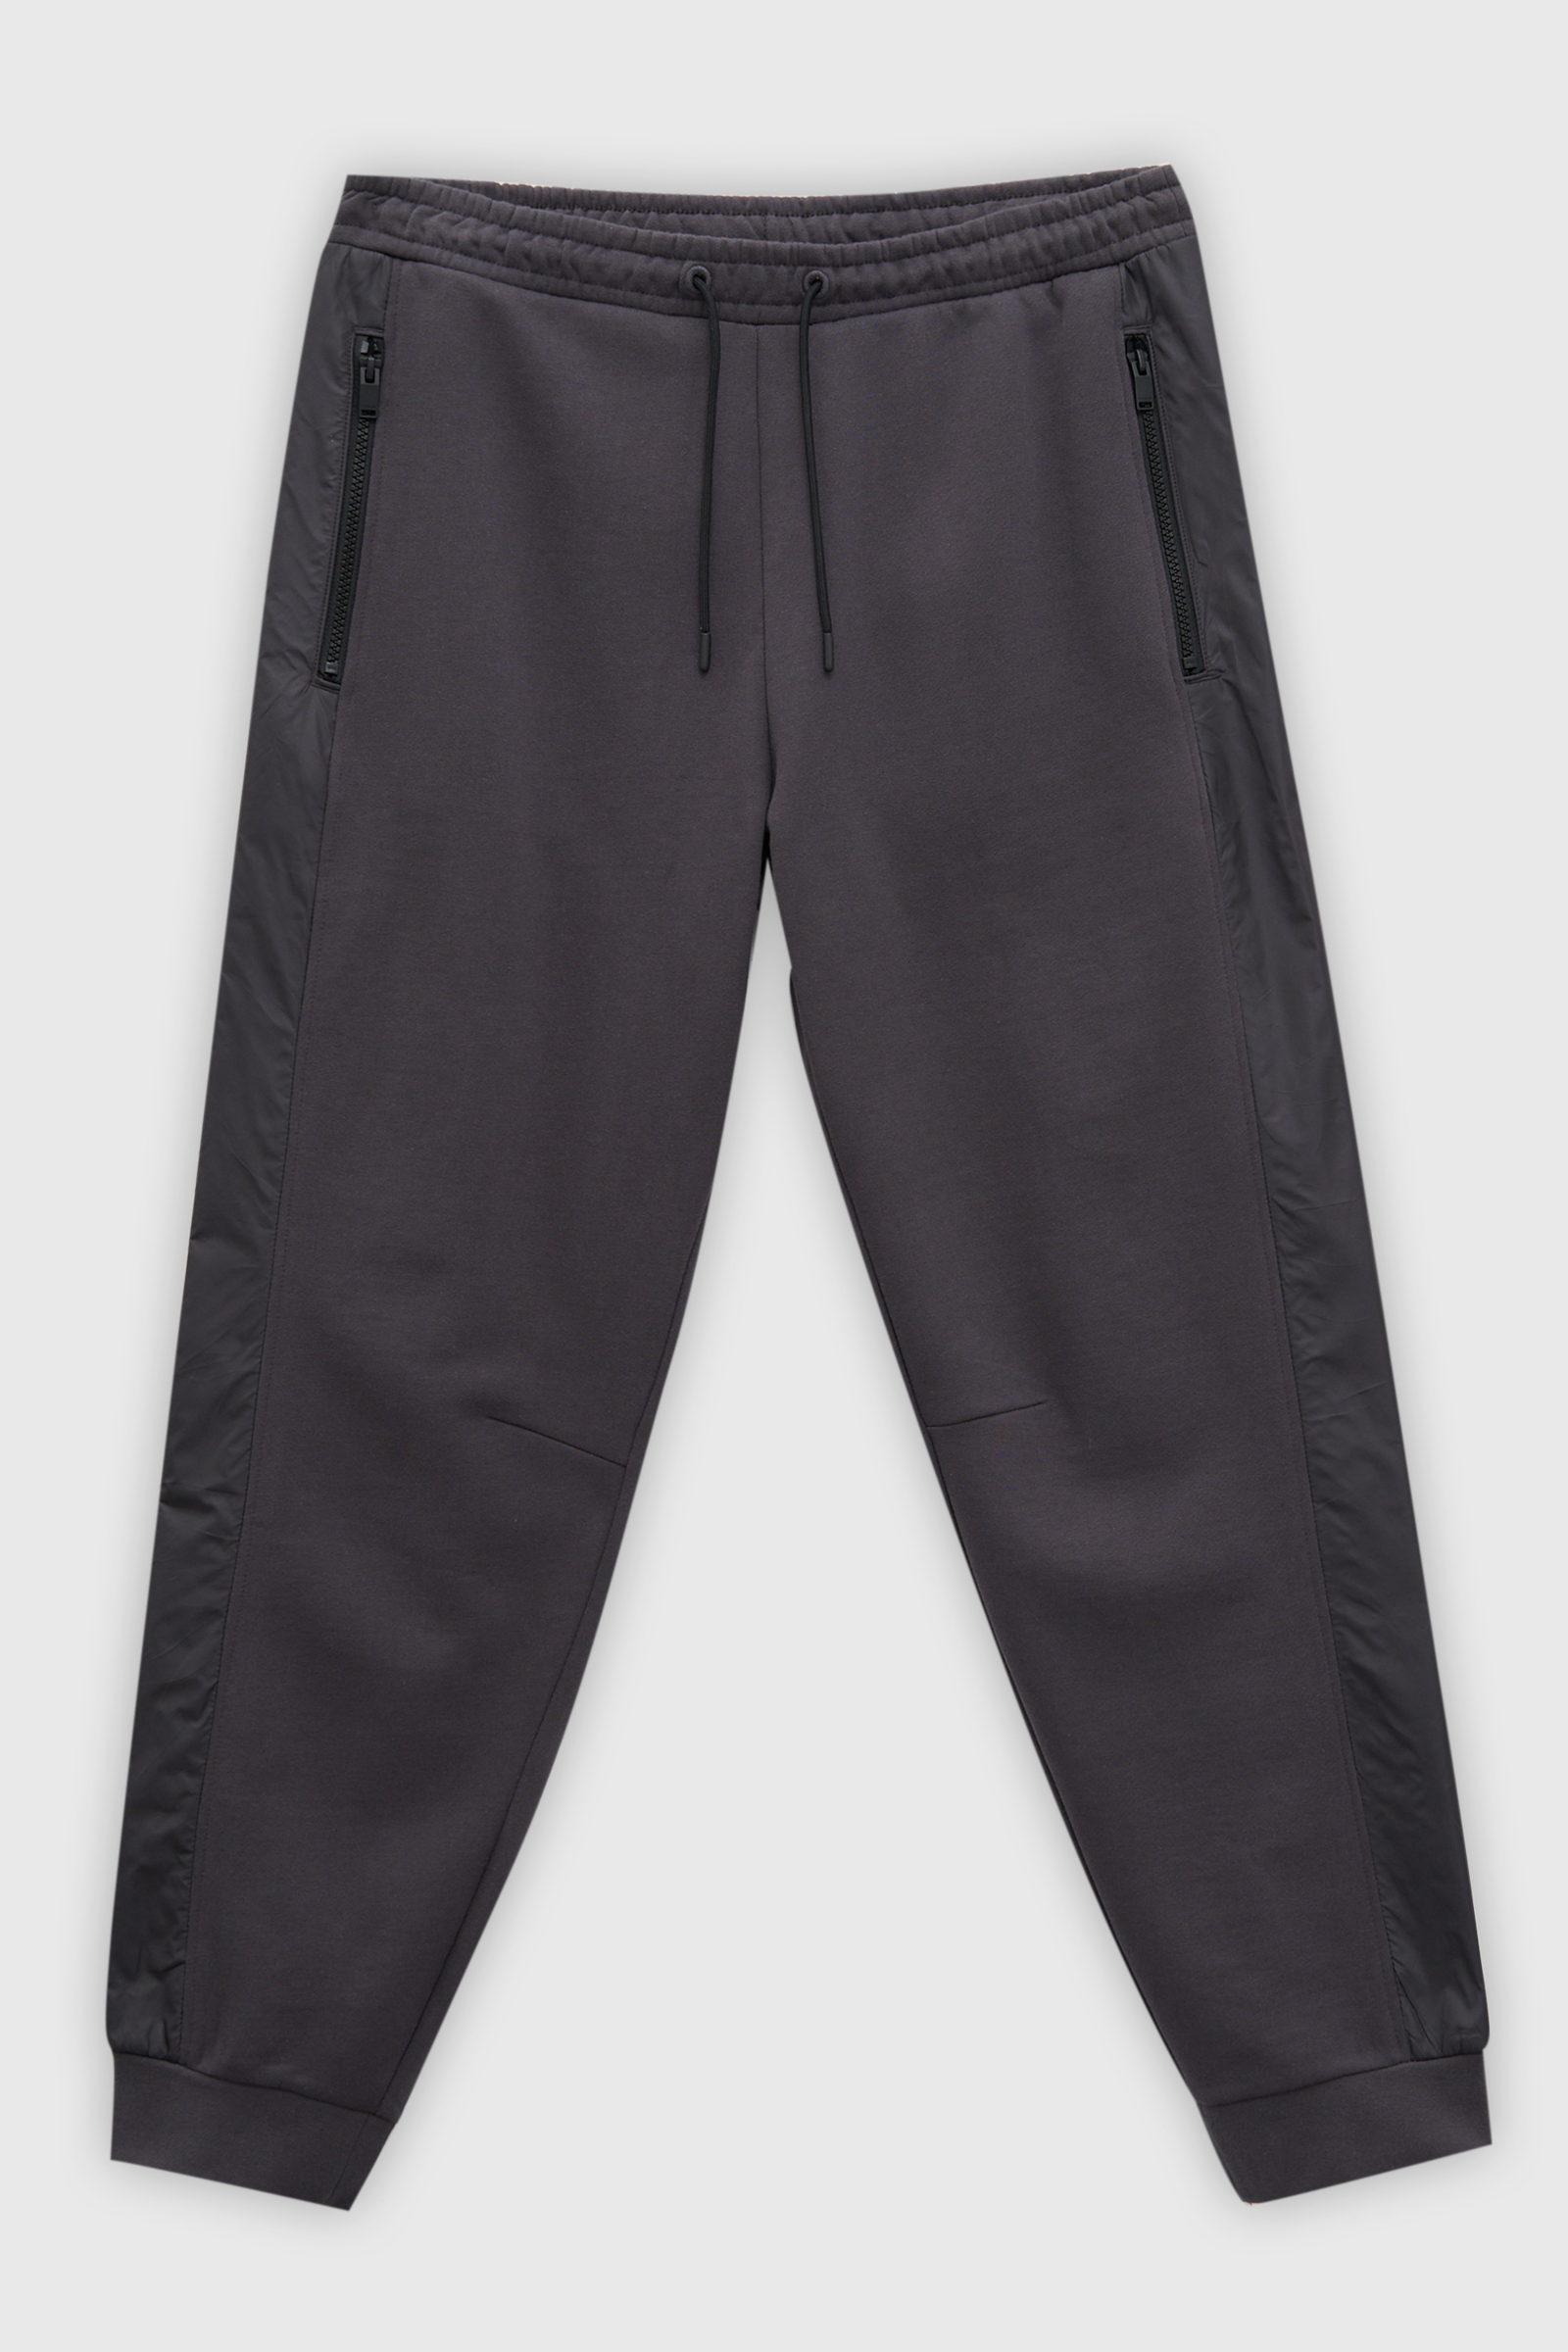 Спортивные брюки мужские Finn Flare FAD21030 серые XL